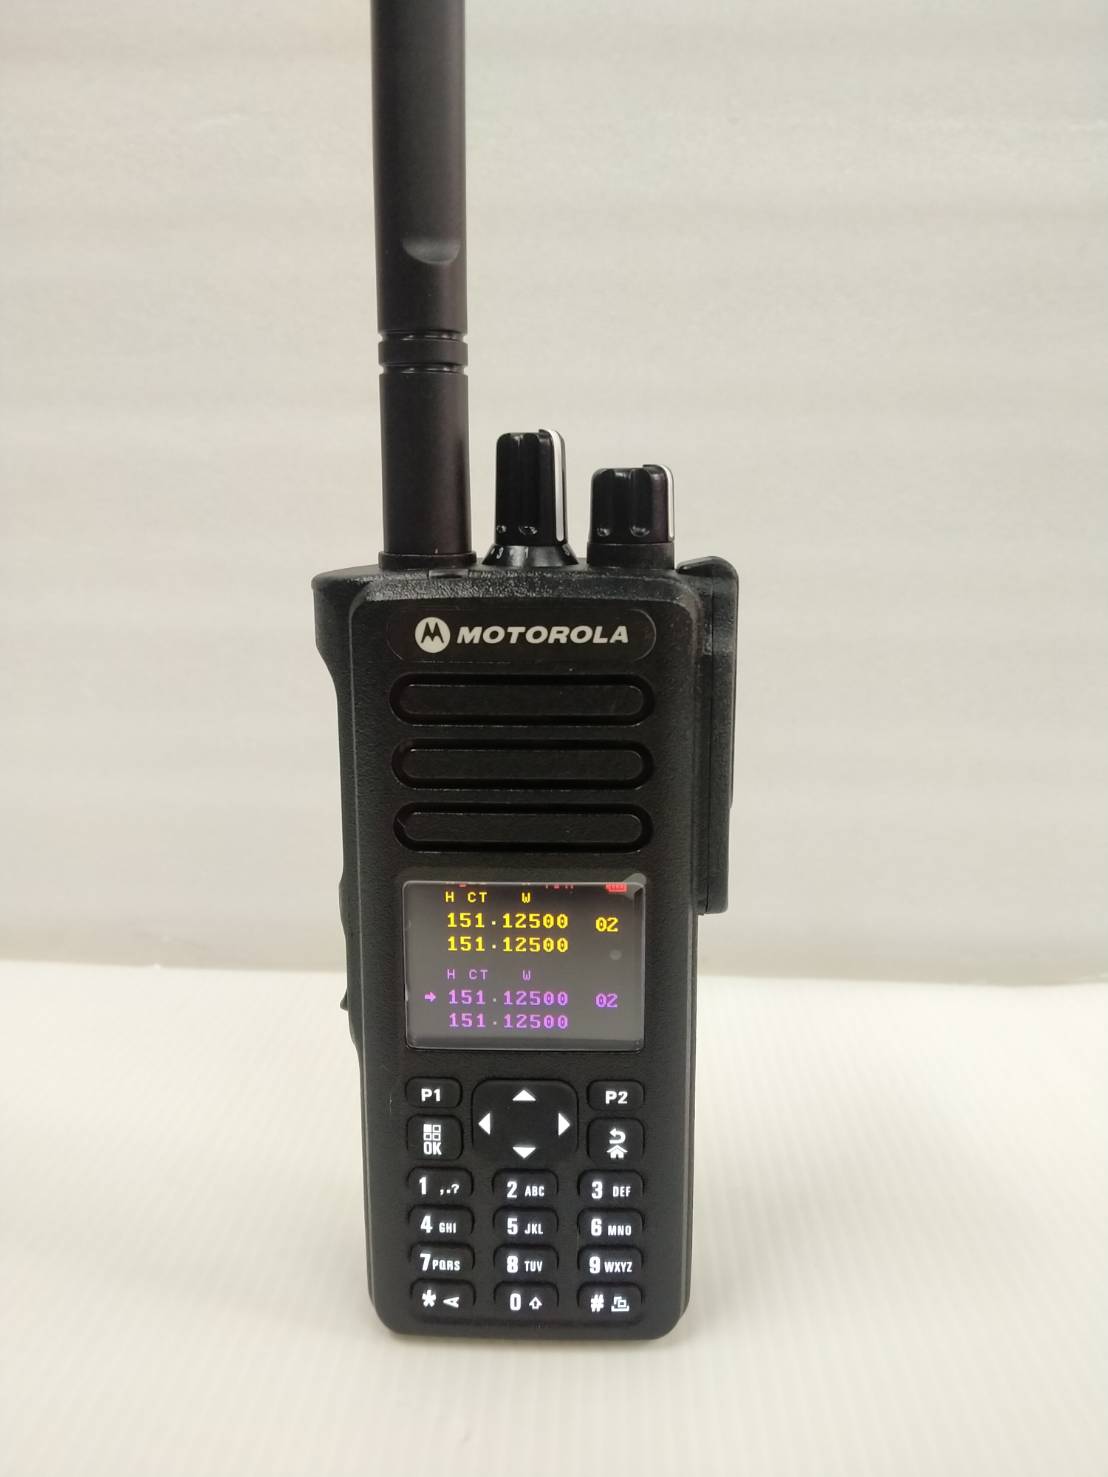 วิทยุสื่อสาร Motorola รุ่น GP-8668   ความถี่ 136-174MHz แสตนบาย 2ช่อง หน้าจอโชว์ 4 บรรทัด กำลังส่ง 10วัตน์+